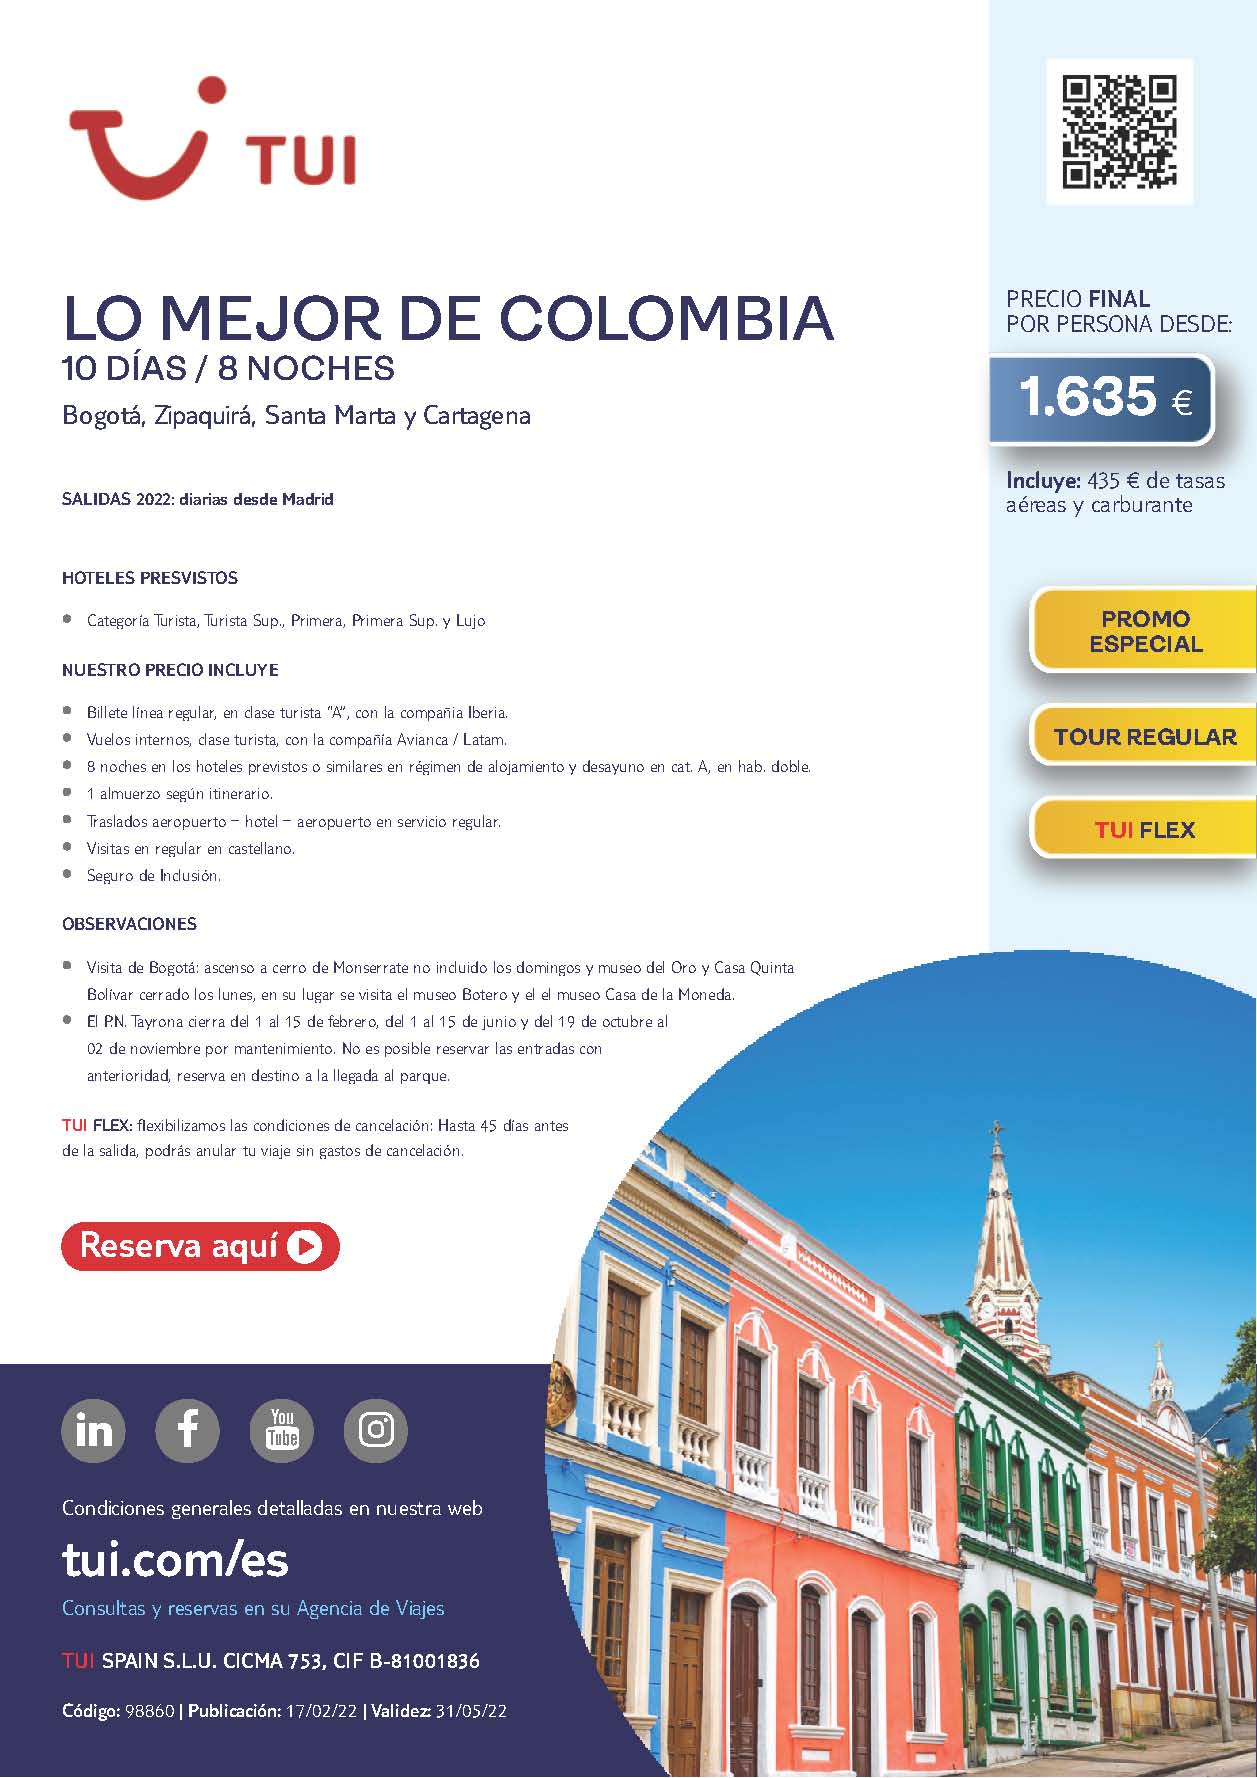 Oferta TUI Primavera 2022 Lo Mejor de Colombia 10 dias salidas desde Madrid vuelos directos Iberia